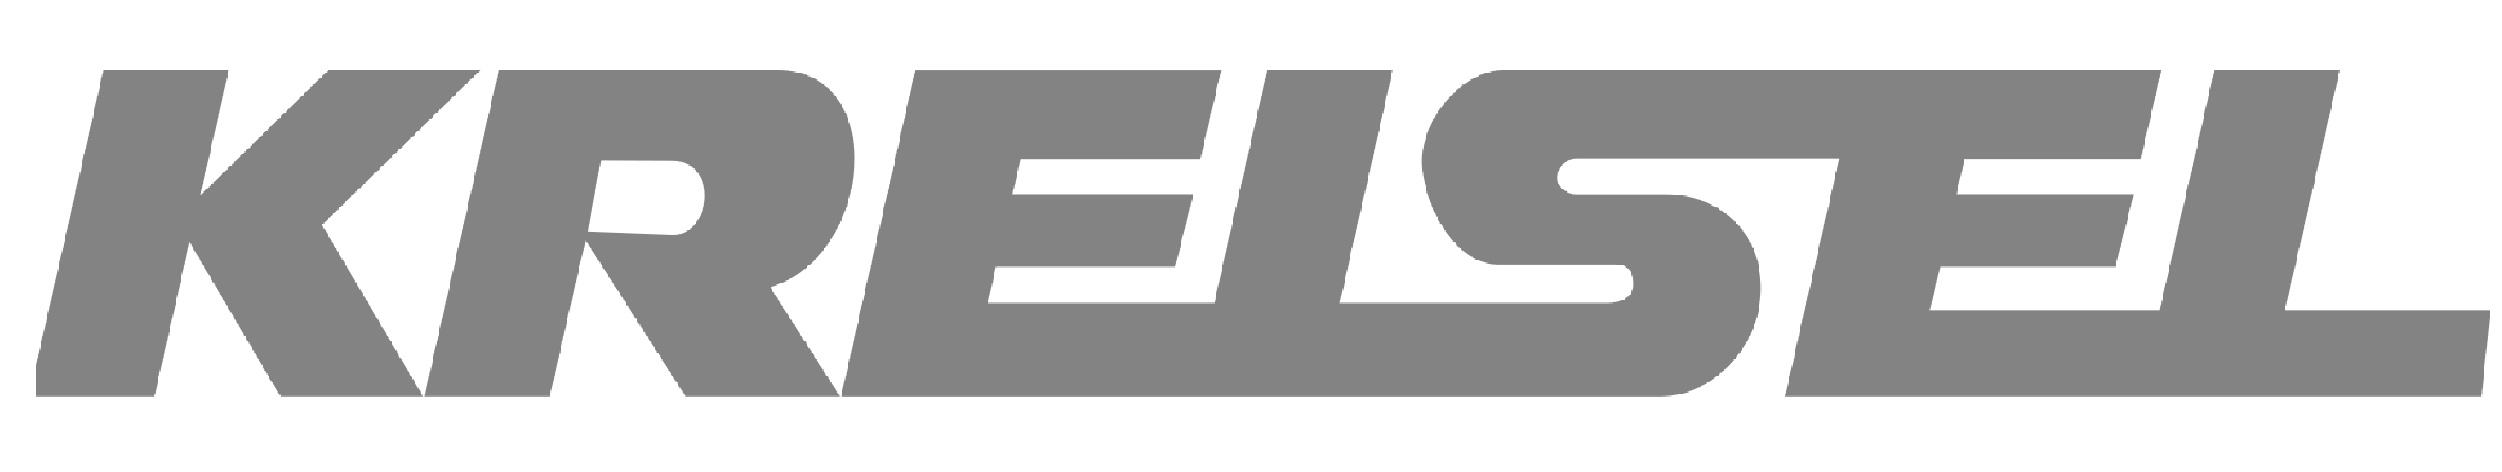 logo_company_5